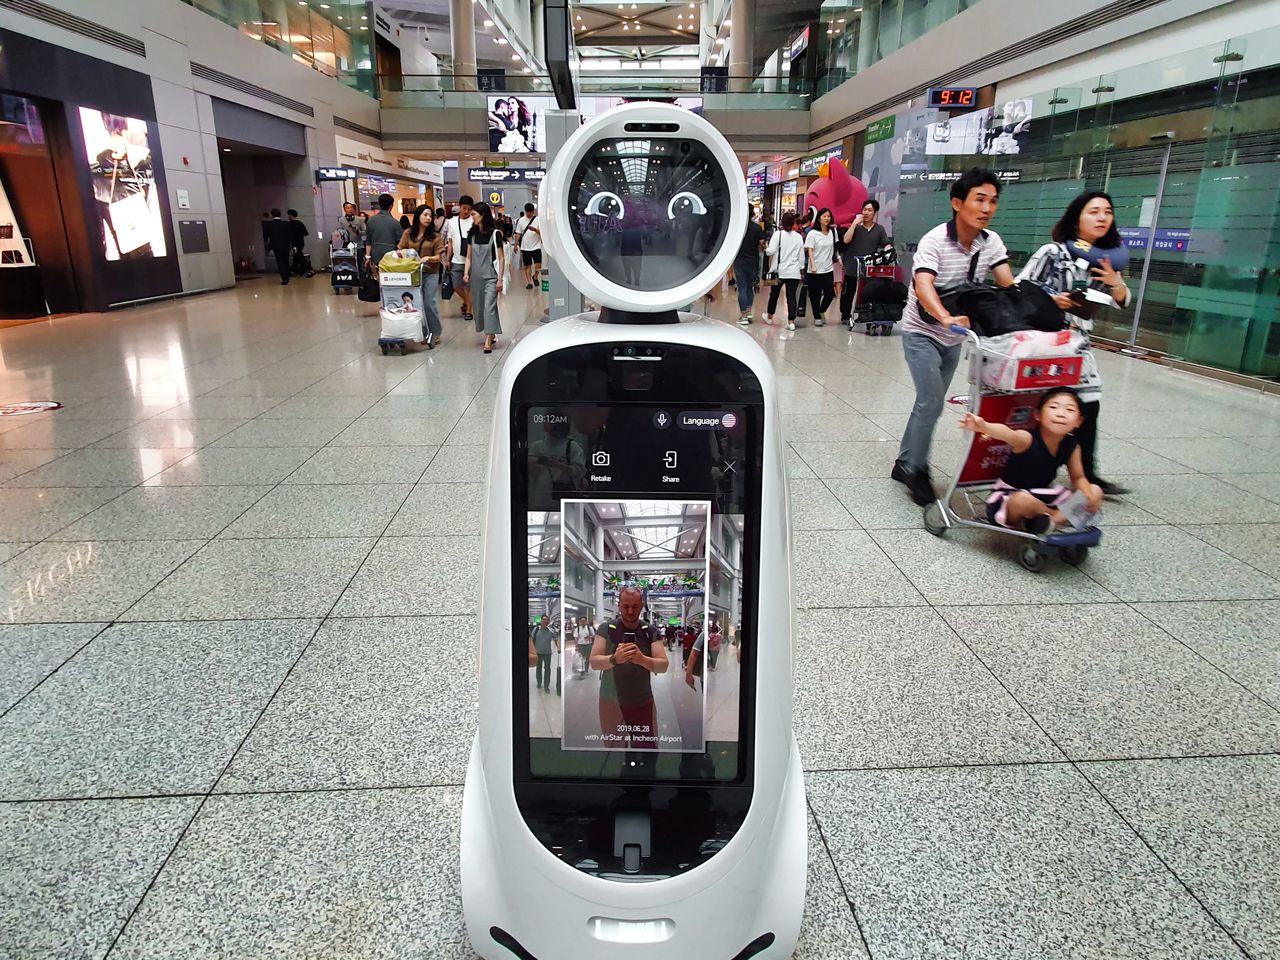 Na lotnisku wita cię robot, ale sygnalizację świetlną zastępują ludzie. Korea Południowa to kraj pełen sprzeczności